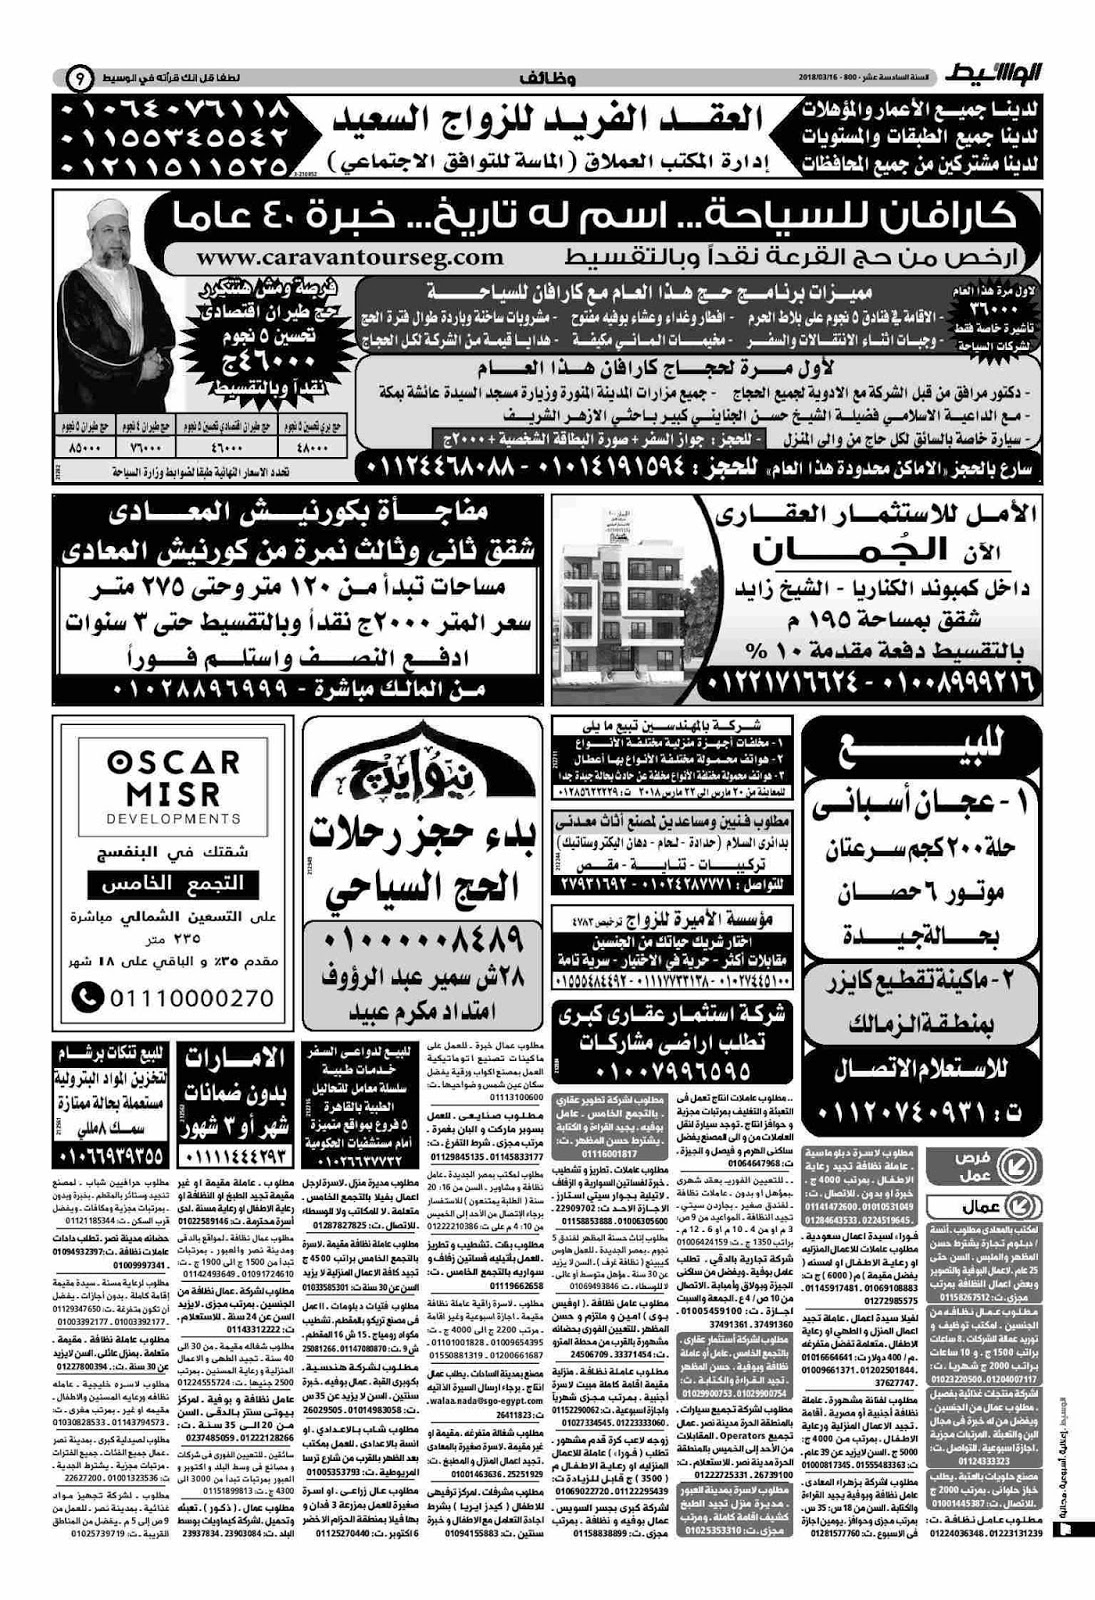 وظائف الوسيط مصر الجمعة 16 مارس 2018 واعلانات الوسيط